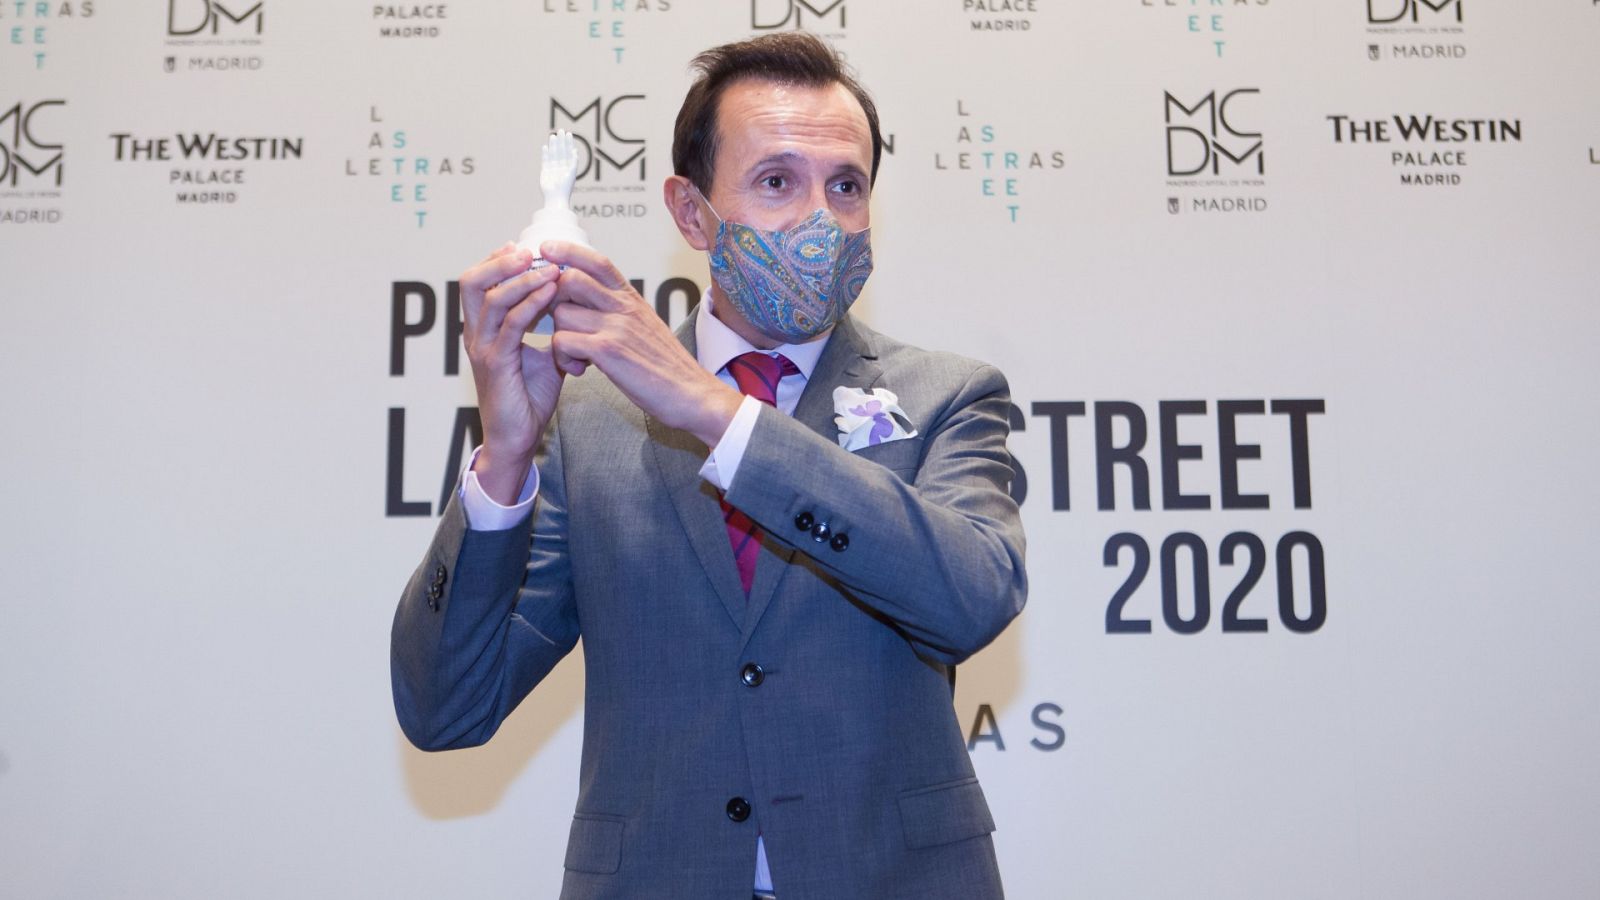 El director de Flash Moda recoge el Premio Las Letras Street